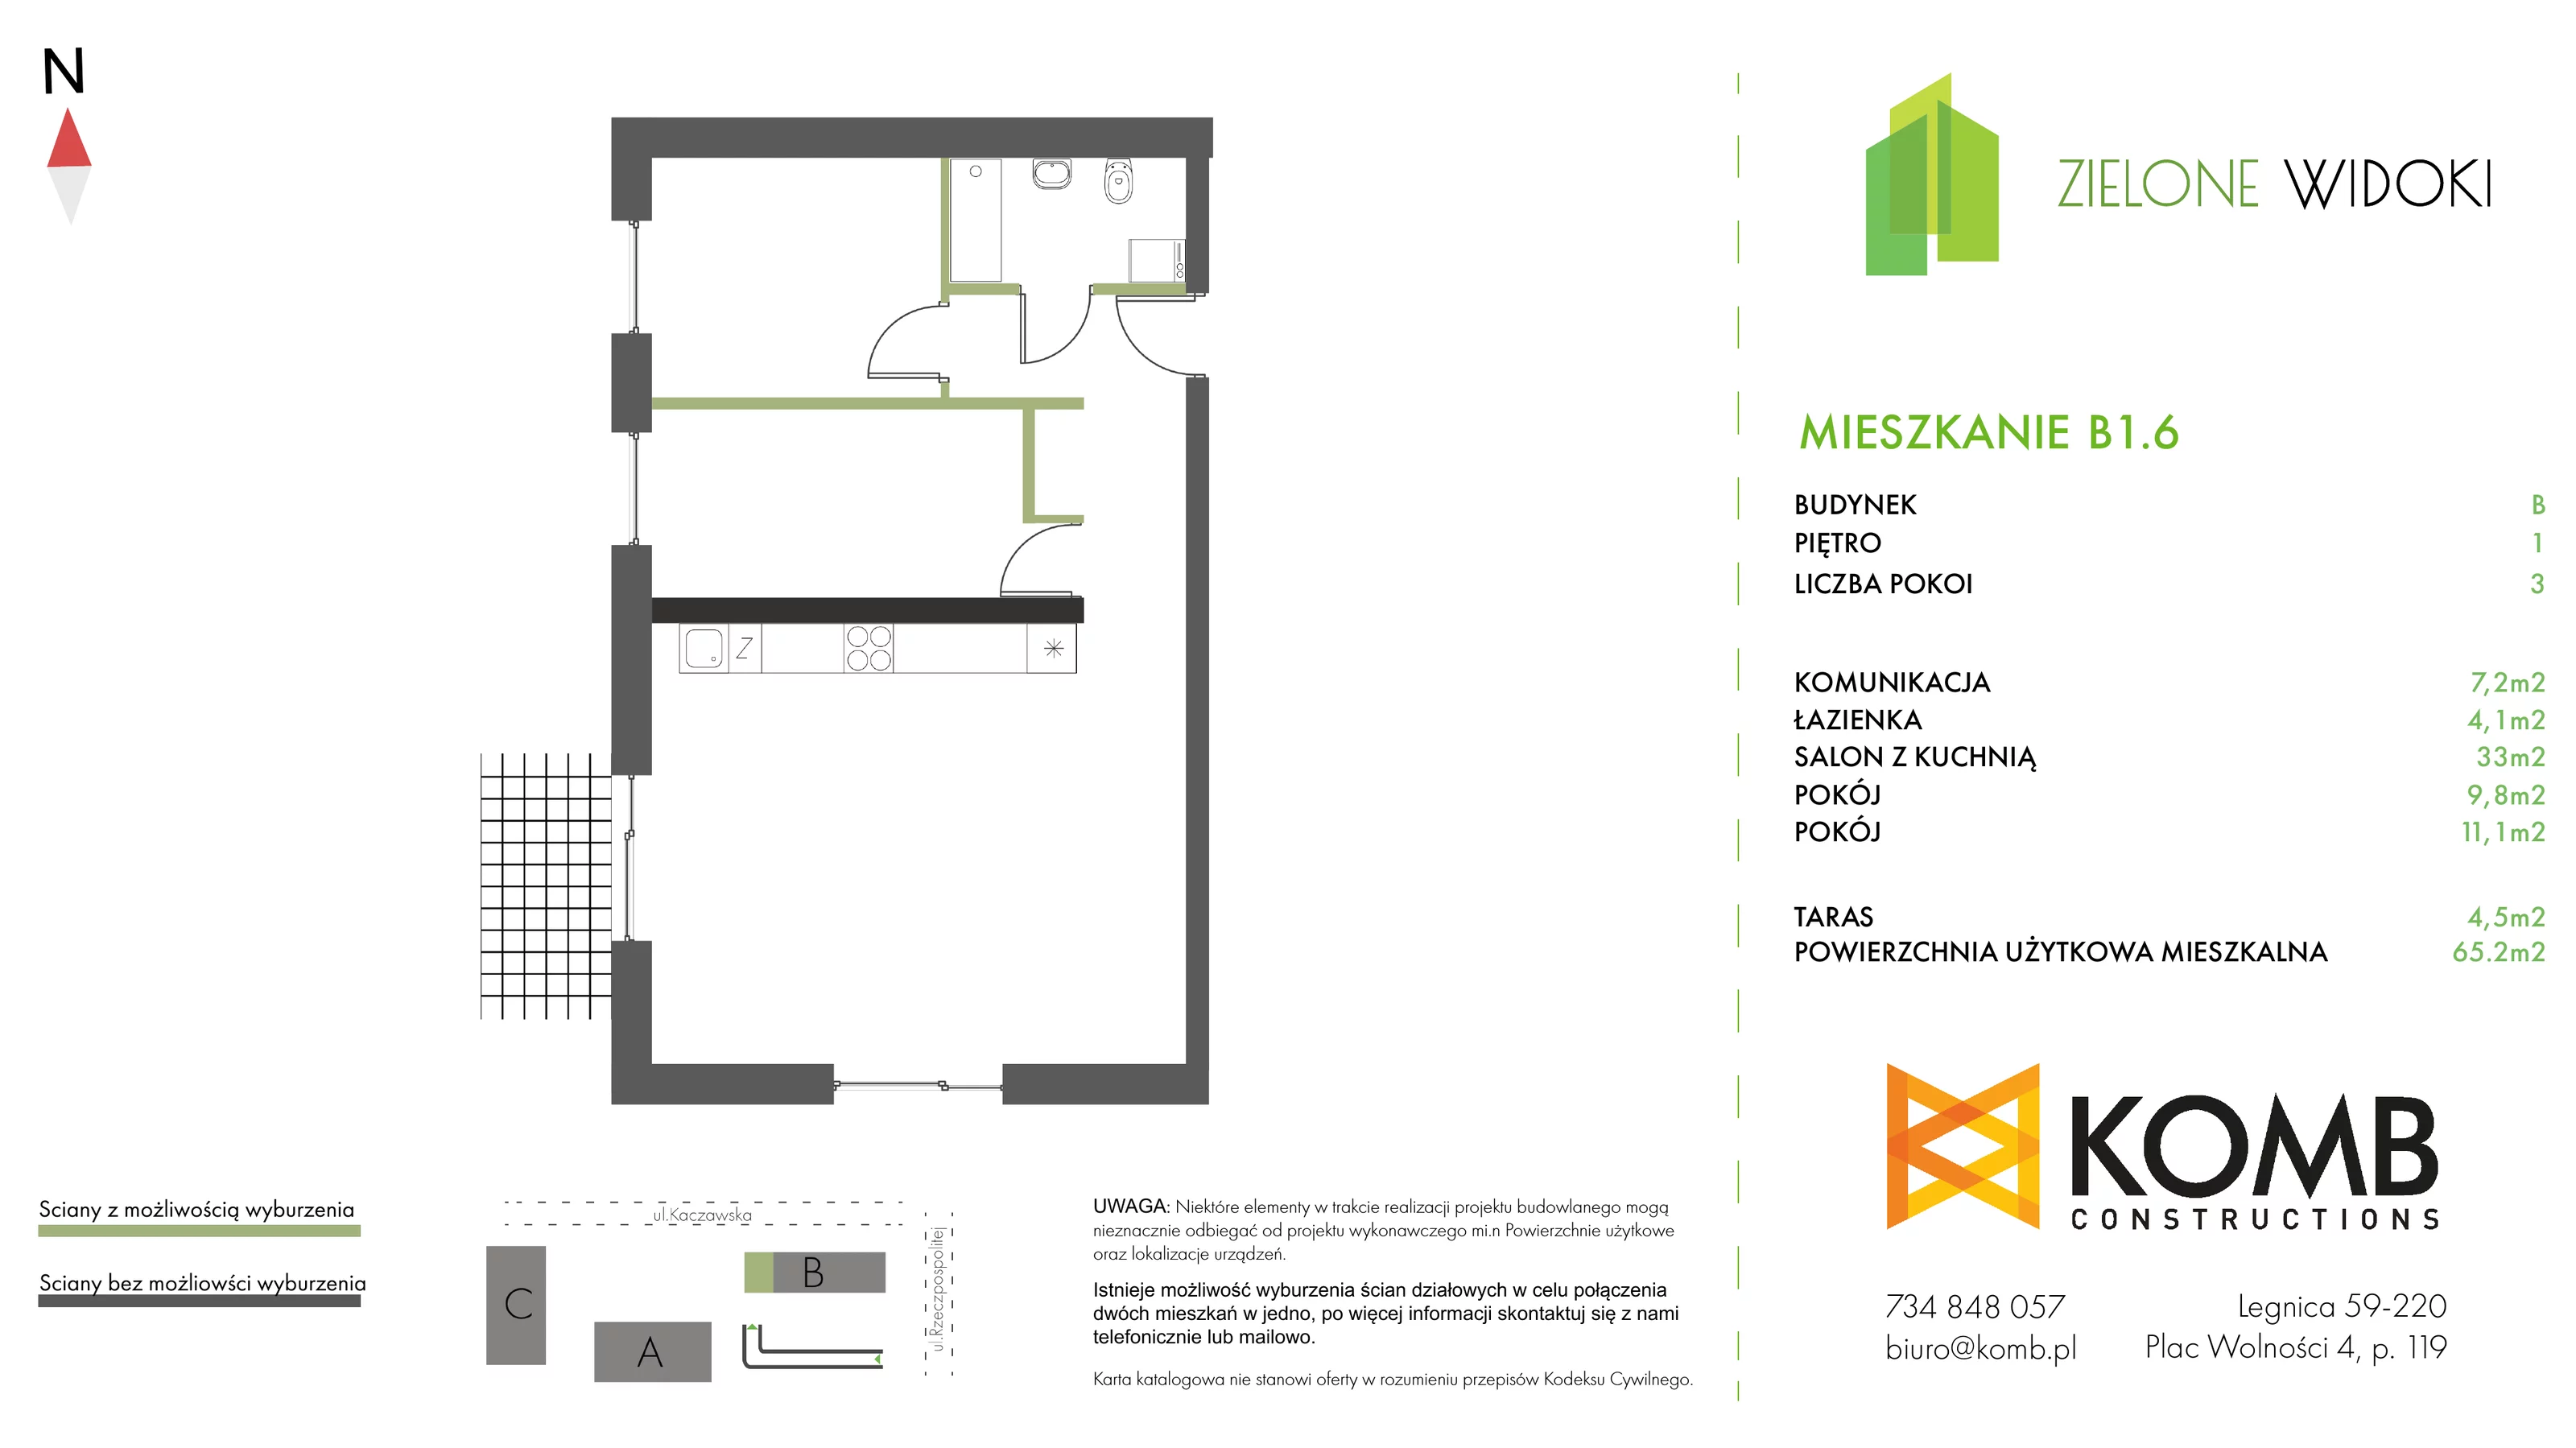 Mieszkanie 65,20 m², piętro 1, oferta nr B1.6, Zielone Widoki, Legnica, Bielany, al. Rzeczypospolitej 23